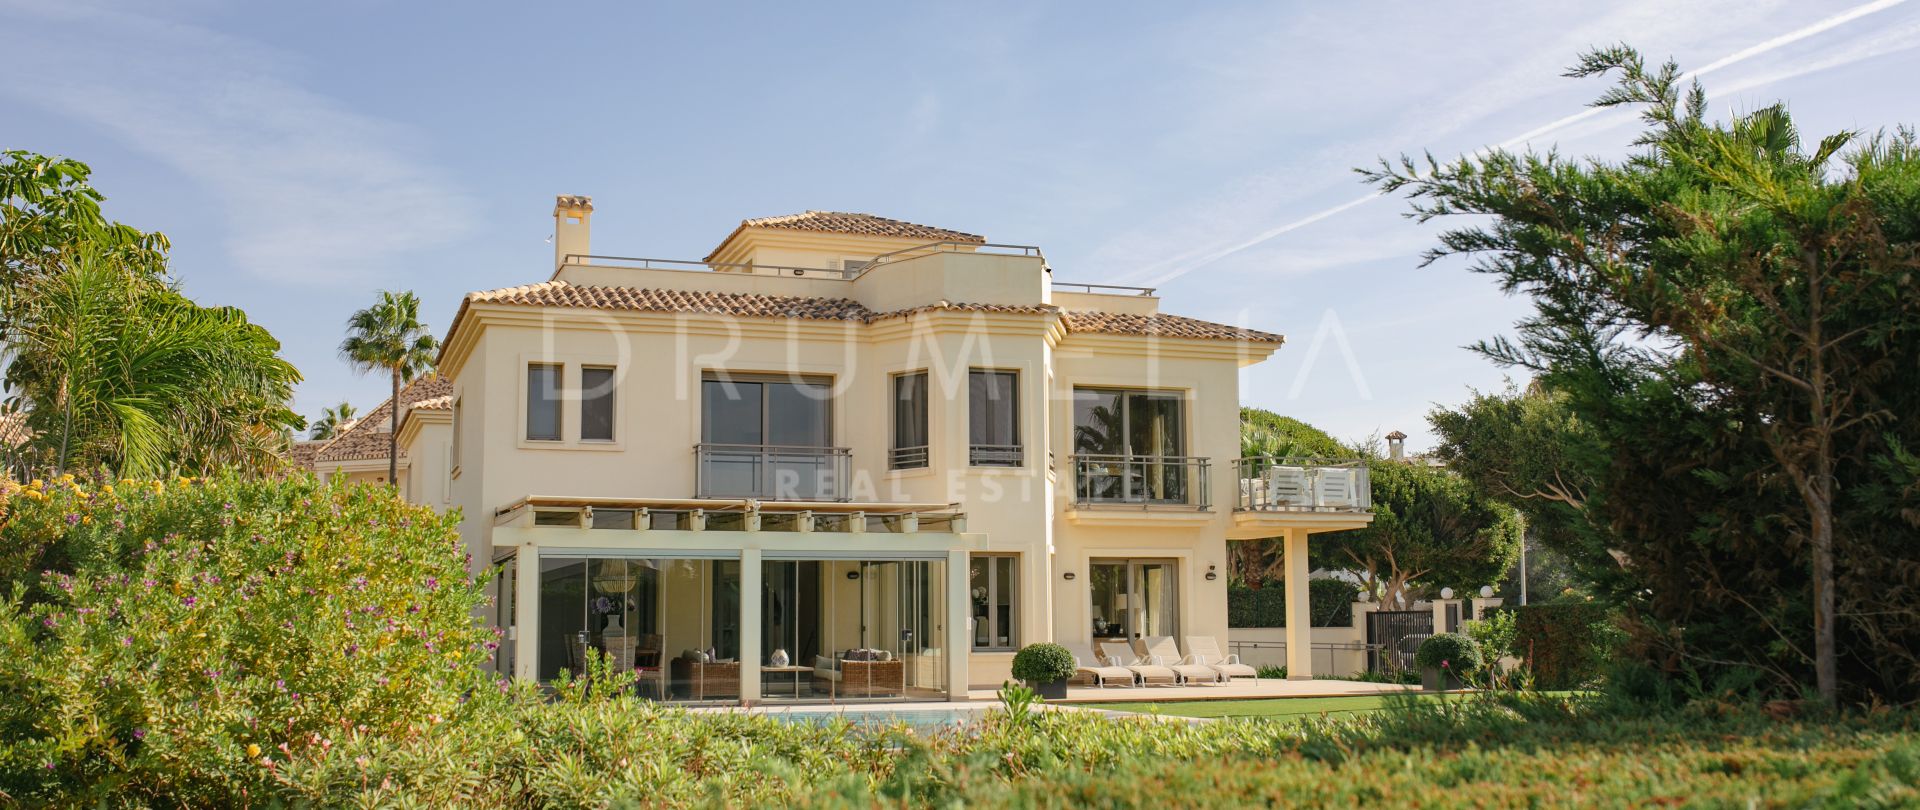 Prachtige luxe villa aan het strand met fantastisch open zeezicht in Marbella Oost.